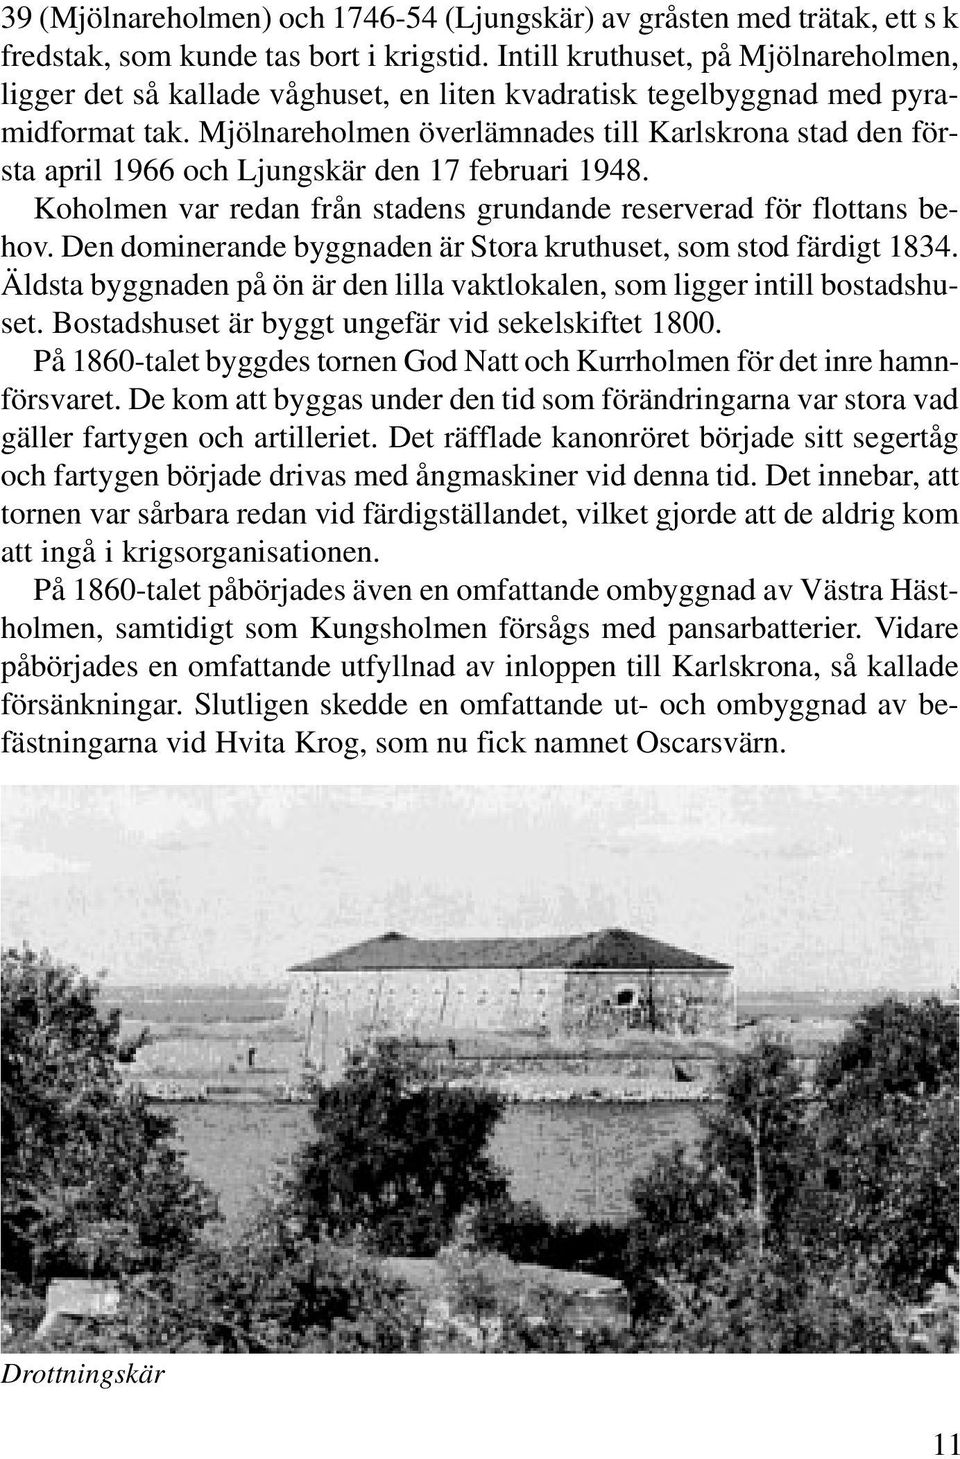 Mjölnareholmen överlämnades till Karlskrona stad den första april 1966 och Ljungskär den 17 februari 1948. Koholmen var redan från stadens grundande reserverad för flottans behov.